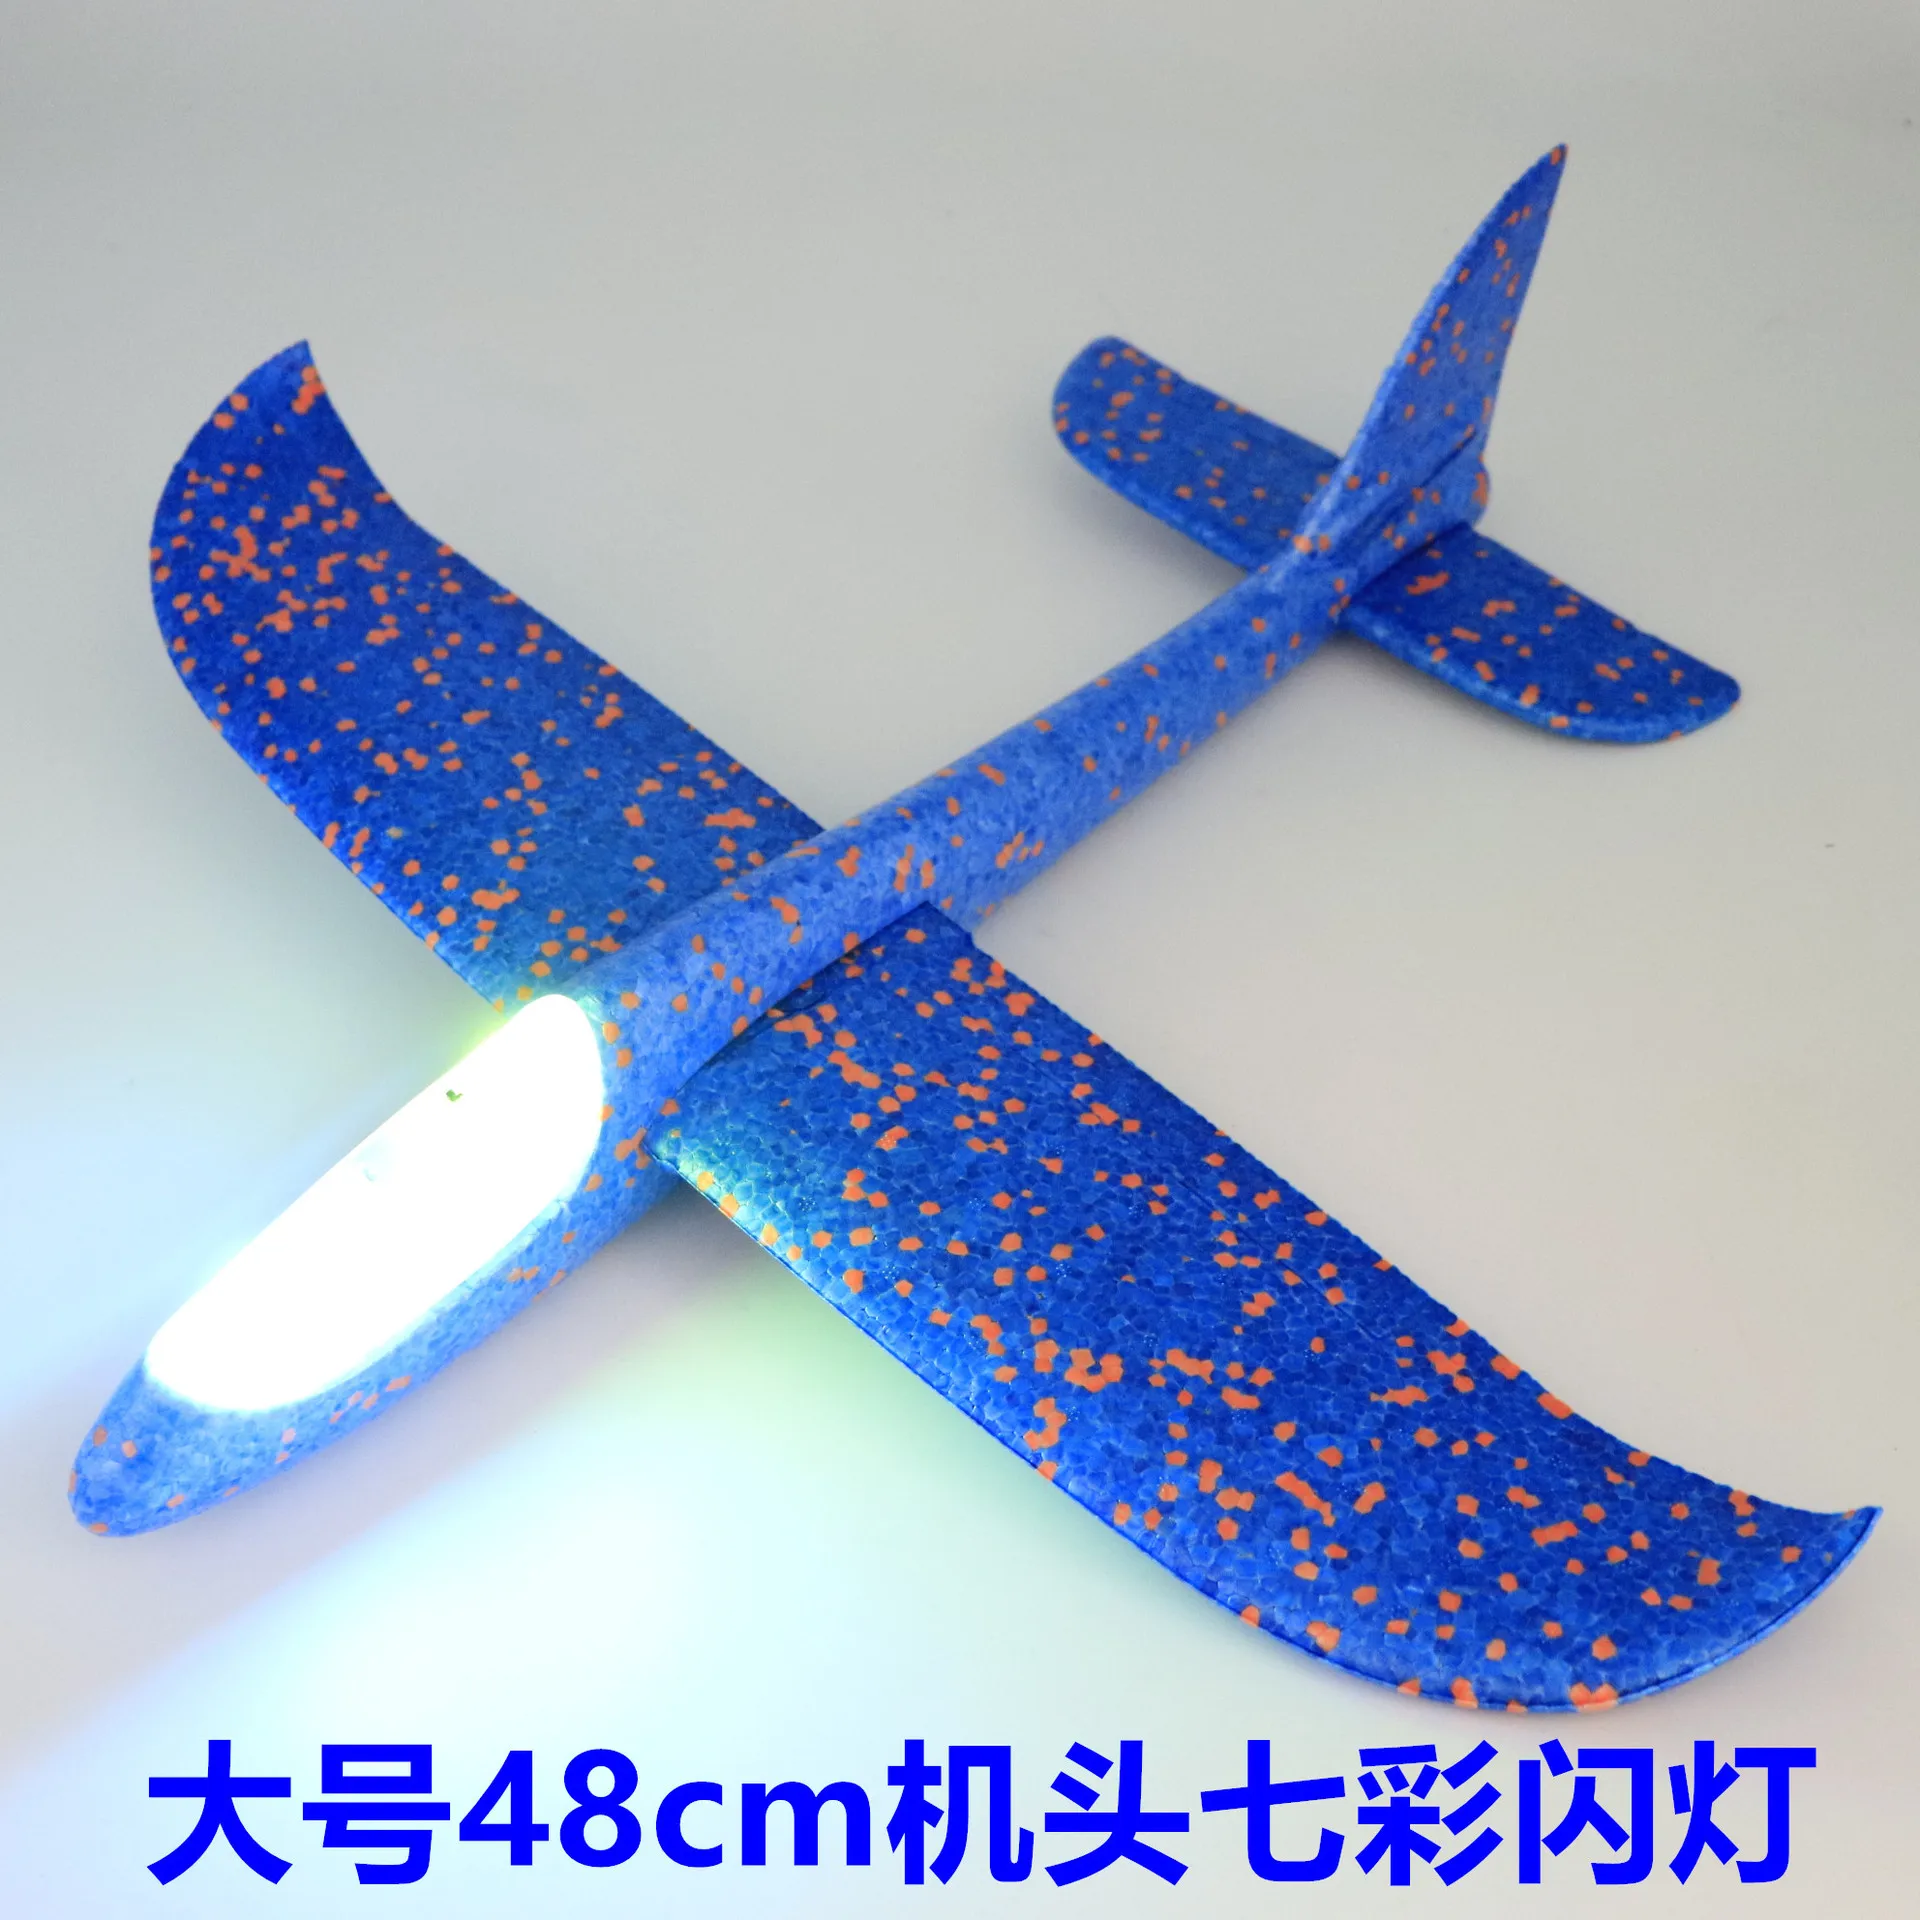 48 см DIY самолет из пенопласта игрушка игрушечные самолеты планировщик ручной бросок Летающий воздушный планерный самолет модель